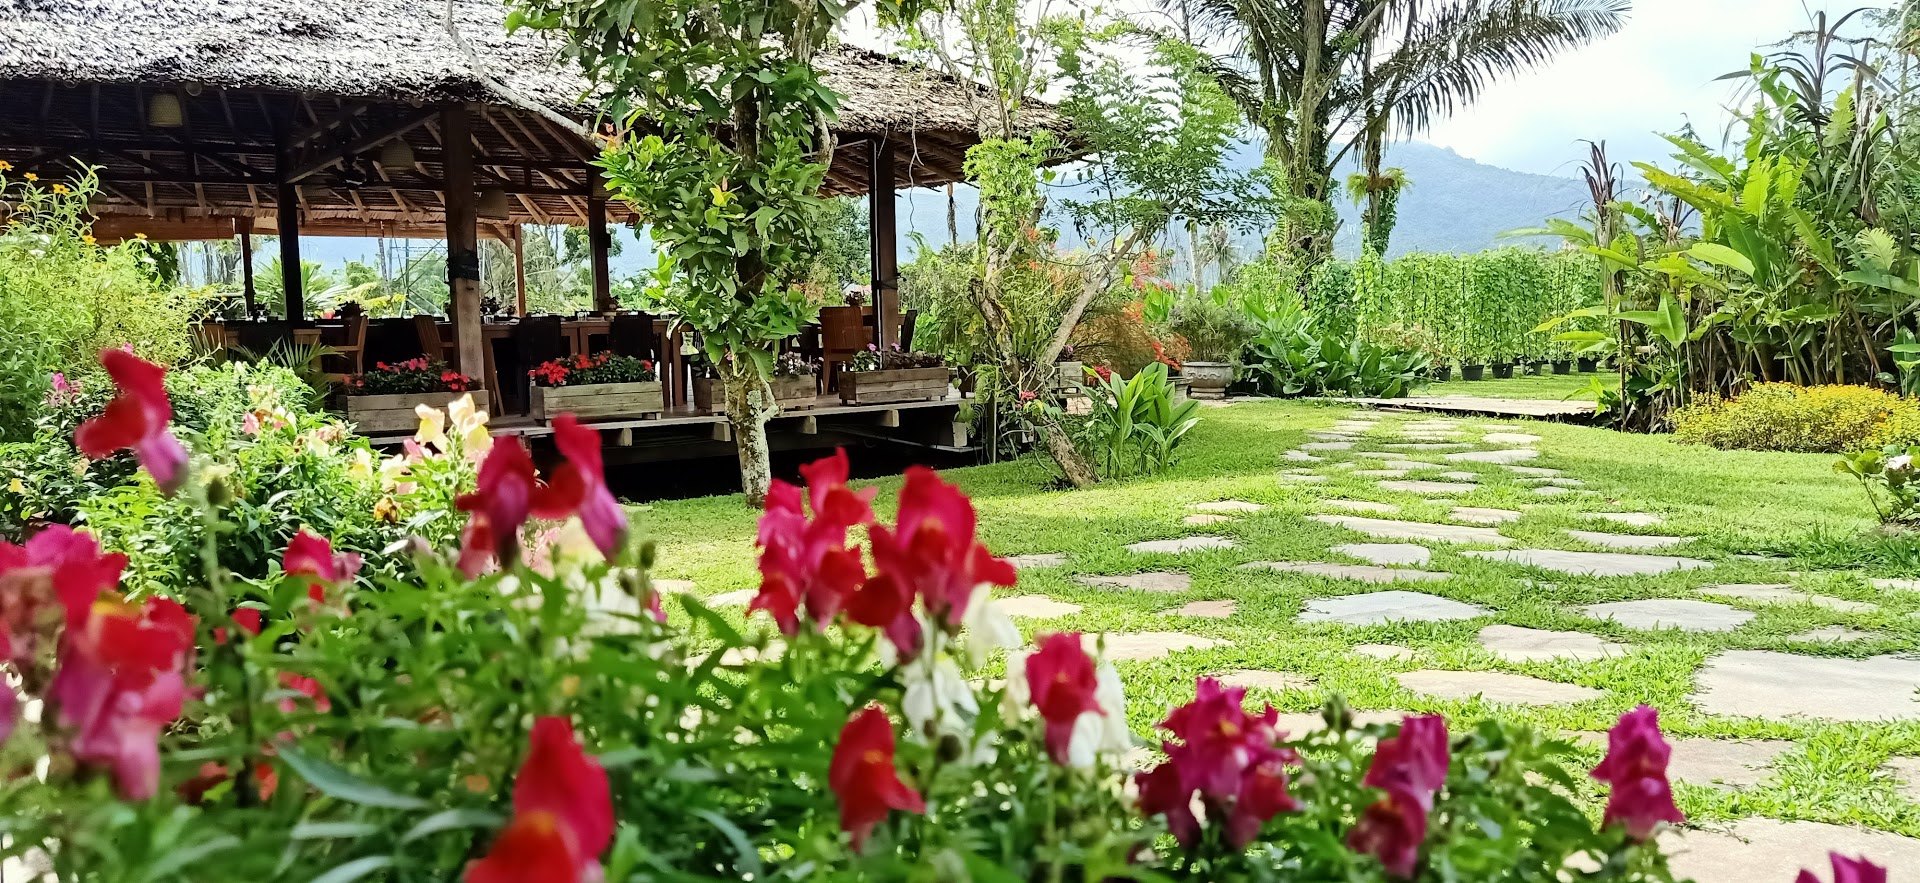 Gardenia Country Inn Tomohon sulawesi original asia rondreis indonesie sulawesi vakantie tuin